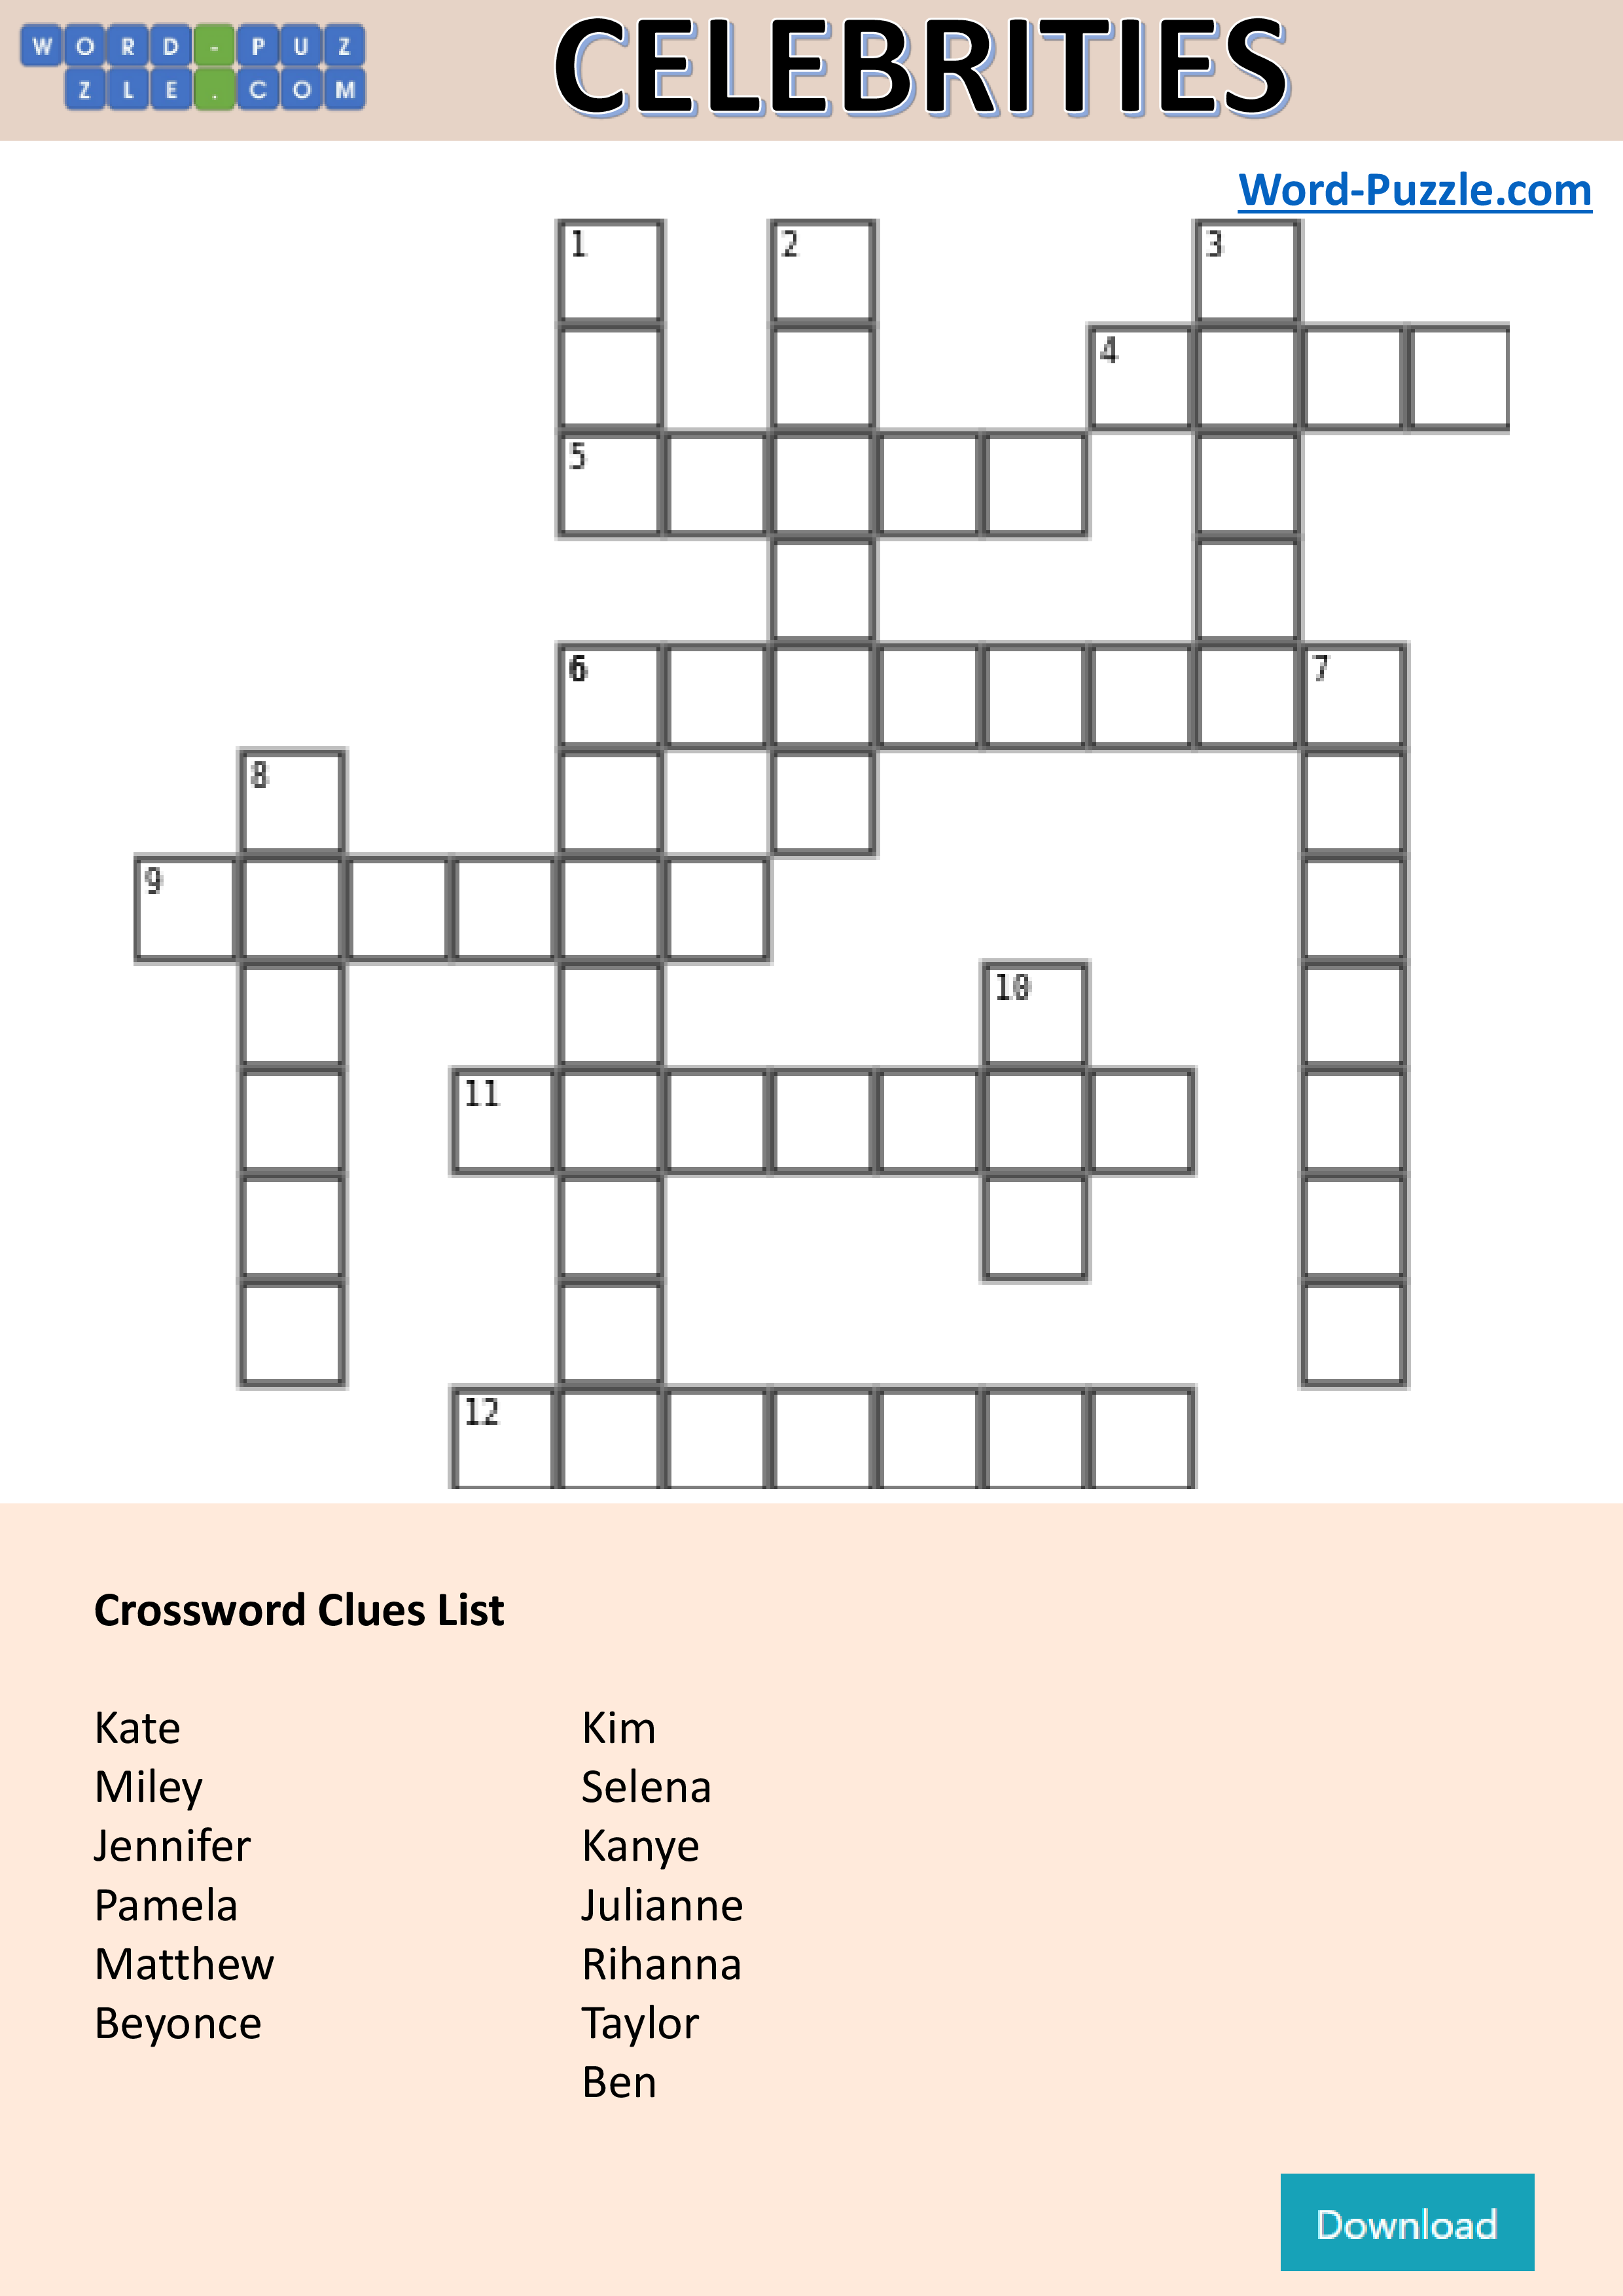 Celebrity Crossword Puzzle Templates at allbusinesstemplates com